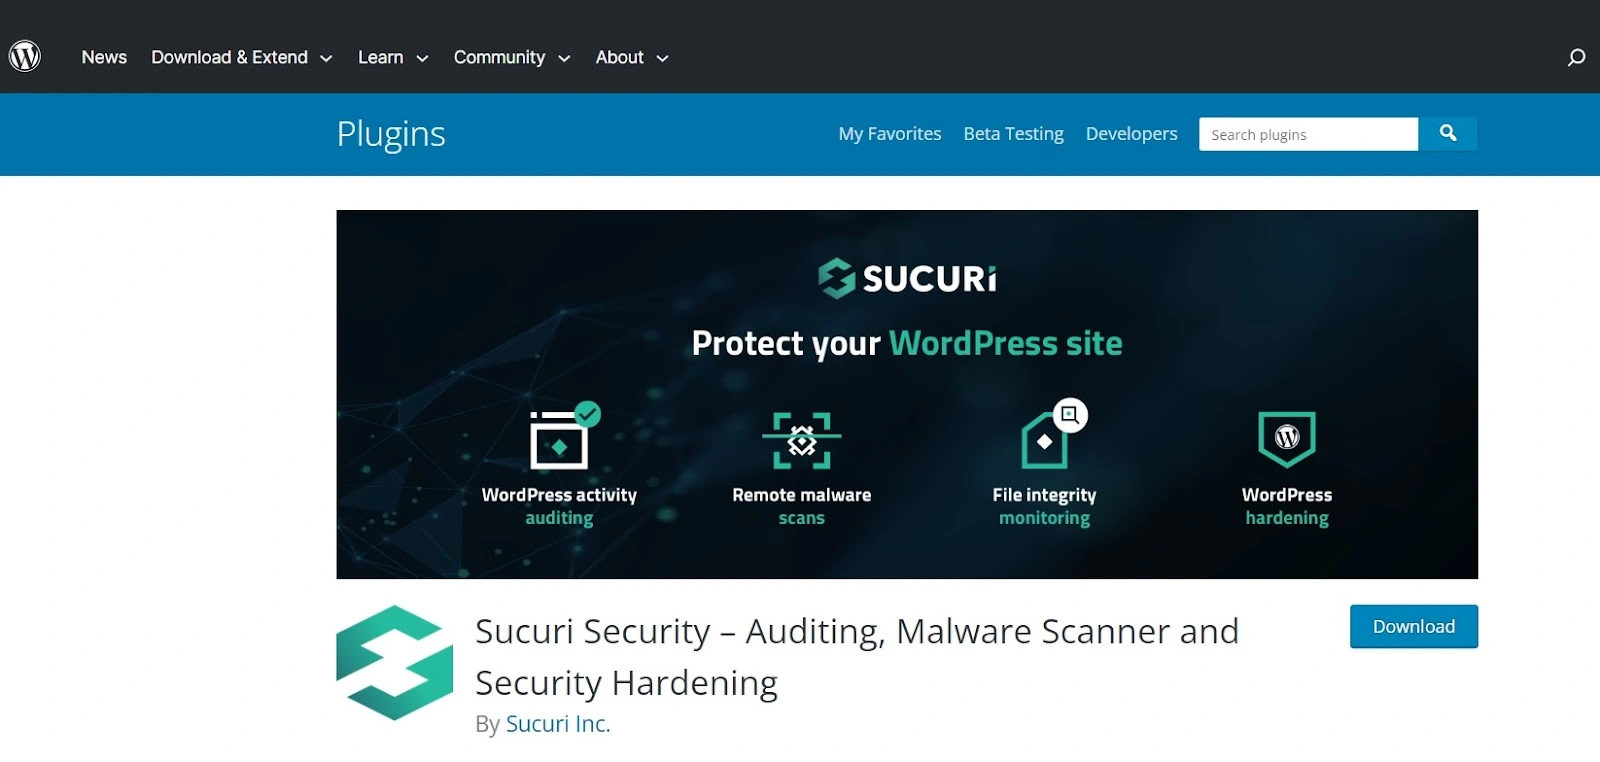 безопасность сайта на wordpress — плагин Sucuri